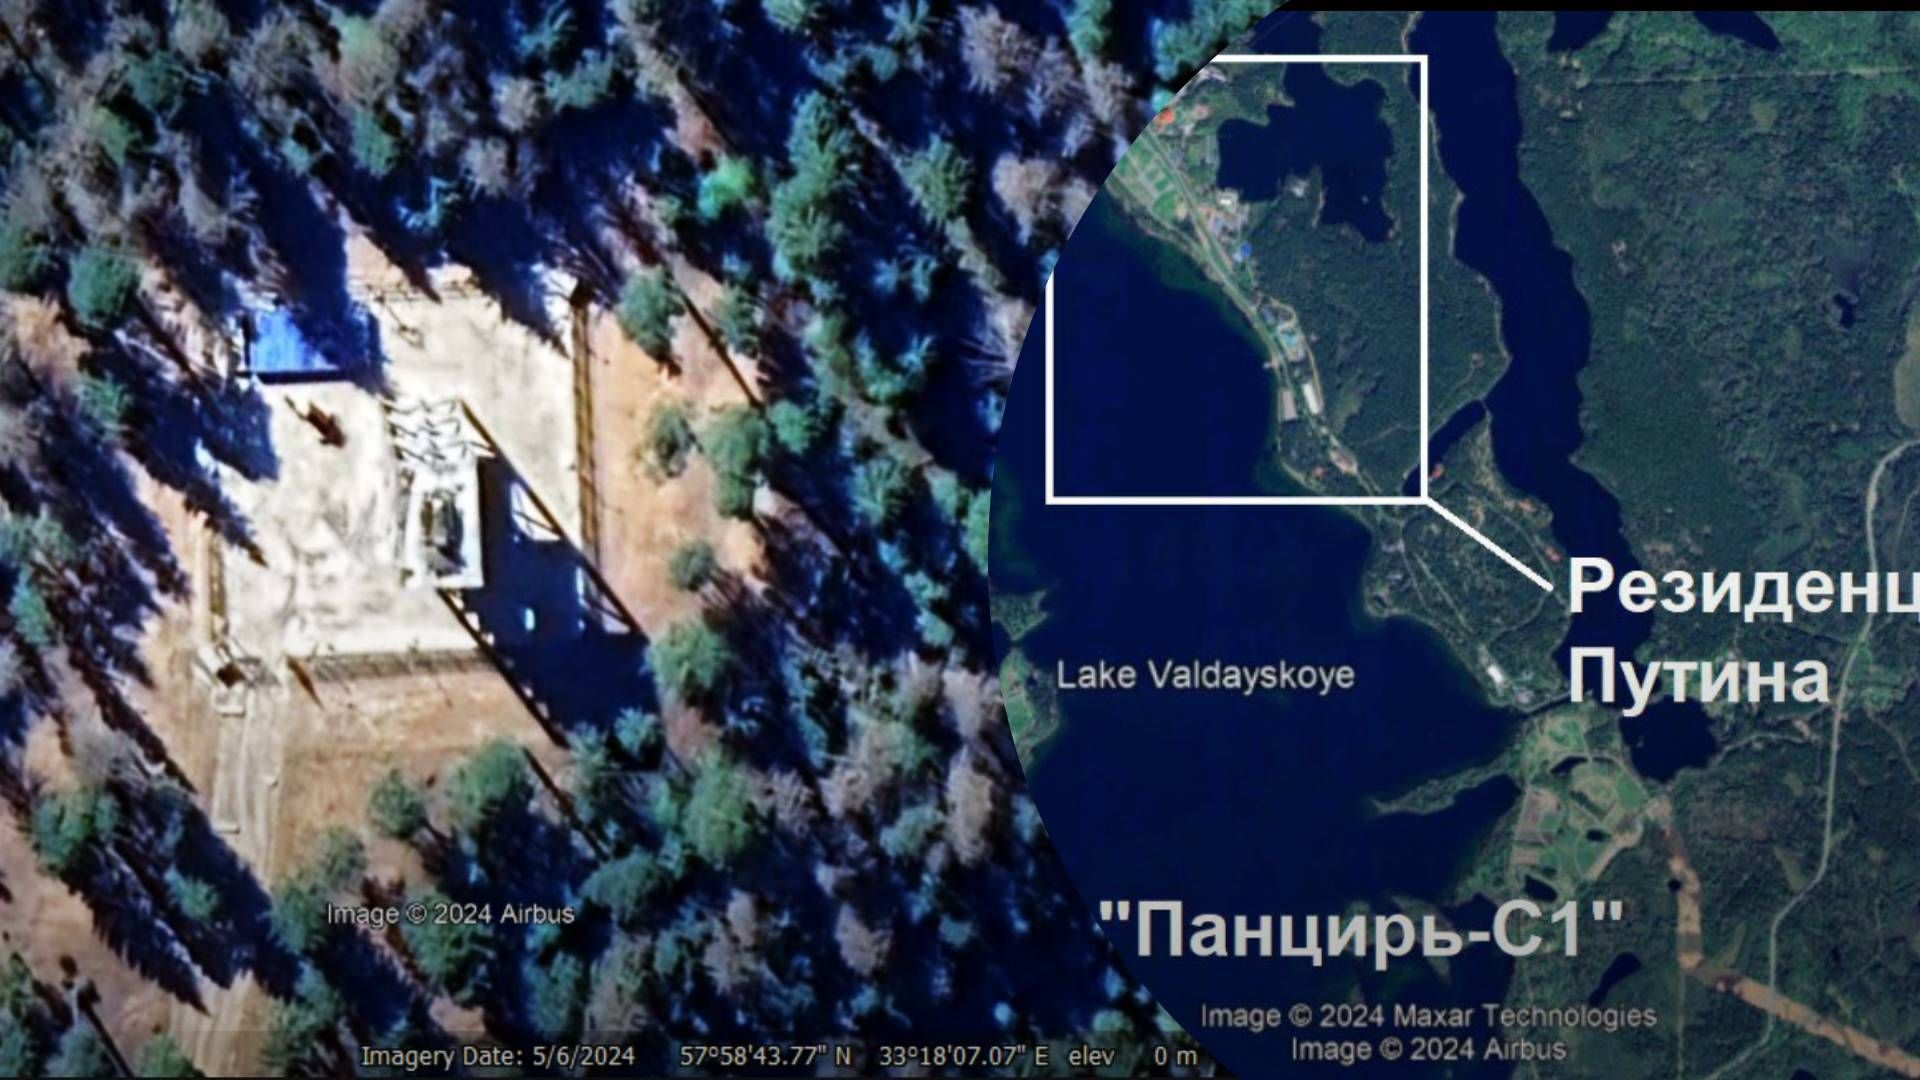 У страха глаза велики: еще одна ПВО появилась возле резиденции Путина на Валдае - 24 Канал